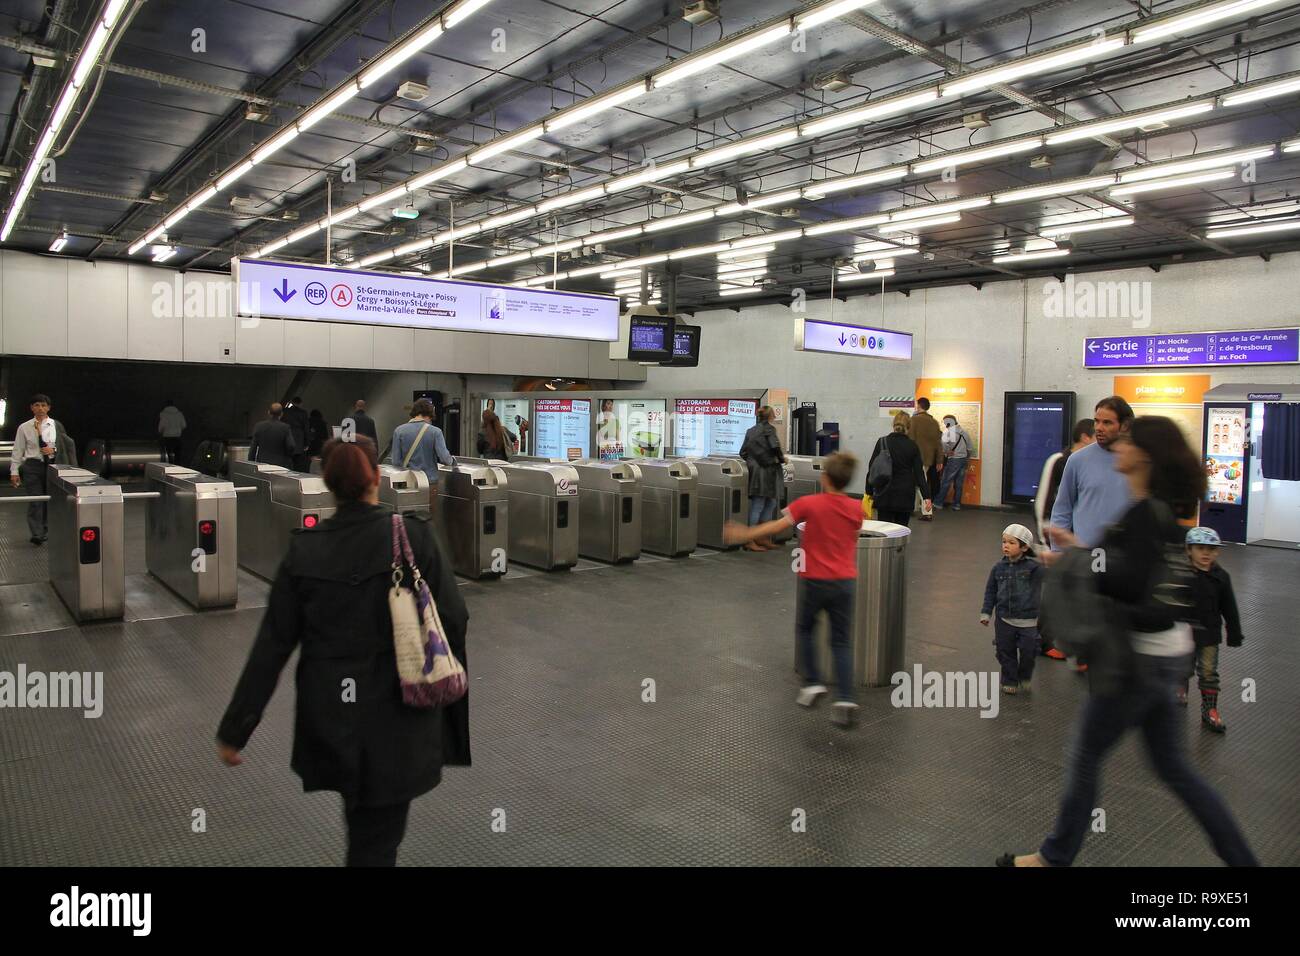 PARIS - le 20 juillet : Les gens entrent dans la station de métro de Paris le 20 juillet 2011 à Paris, France. Métro de Paris est le 2ème plus grand système de métro dans le monde entier par nu Banque D'Images